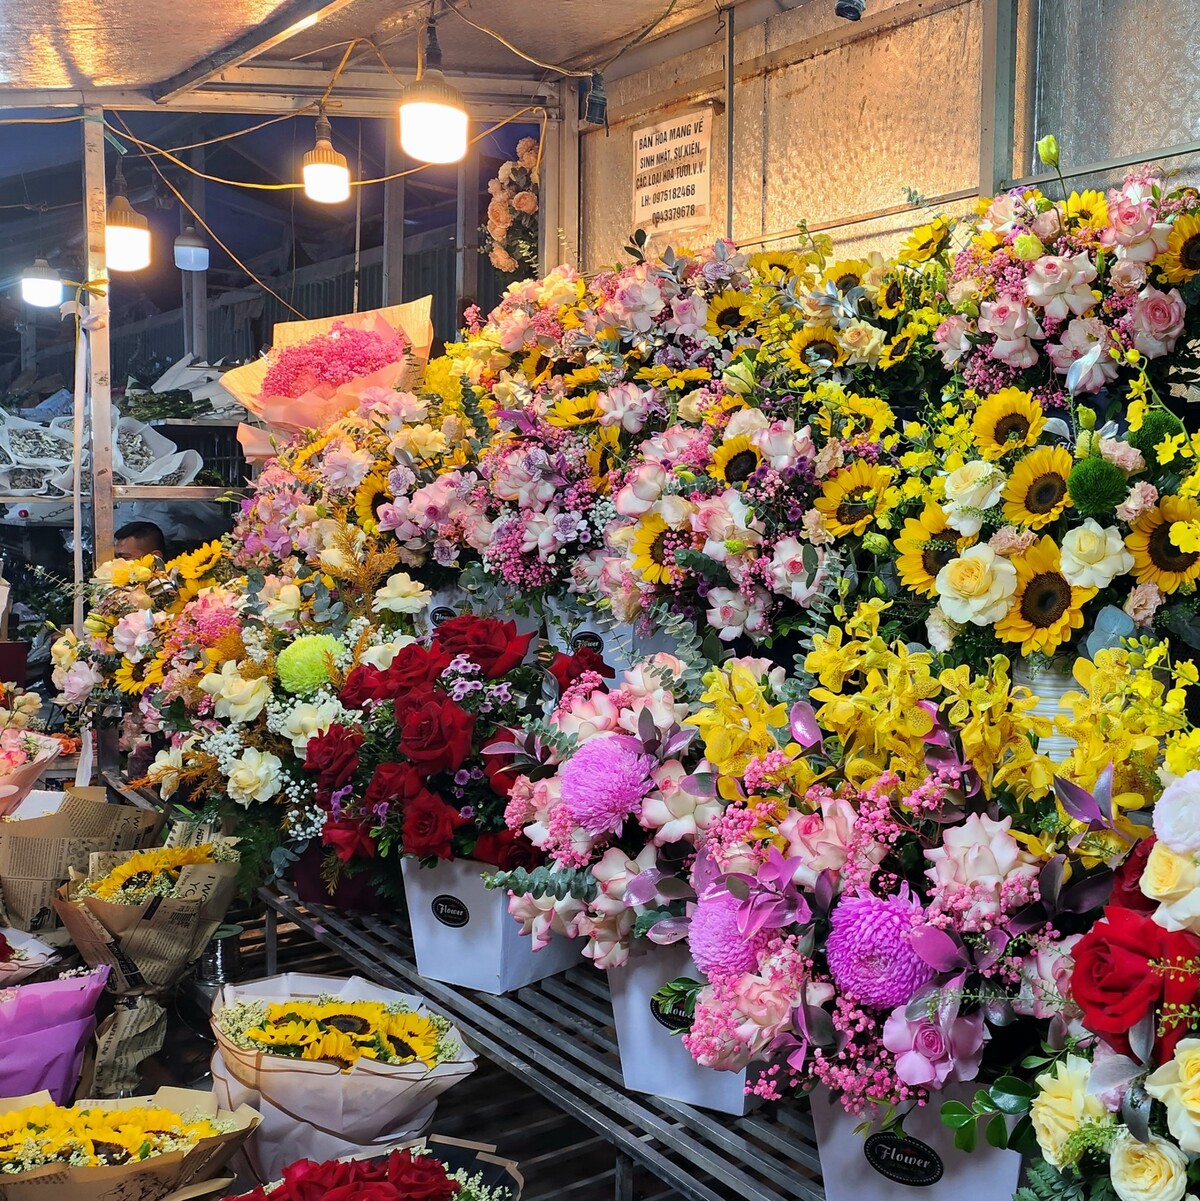 Tại khu chợ hoa các cửa hàng dịp lễ cũng cho ra nhiều mẫu hoa dạng giỏ, dạng bó với các loại hoa đặc trưng như hoa hồng đỏ, hoa tú cầu, hướng dương, lan... Giá bán giao động từ 200.000 đồng - 500.000 đồng tuỳ số lượng hoa, kích thước mỗi bó.